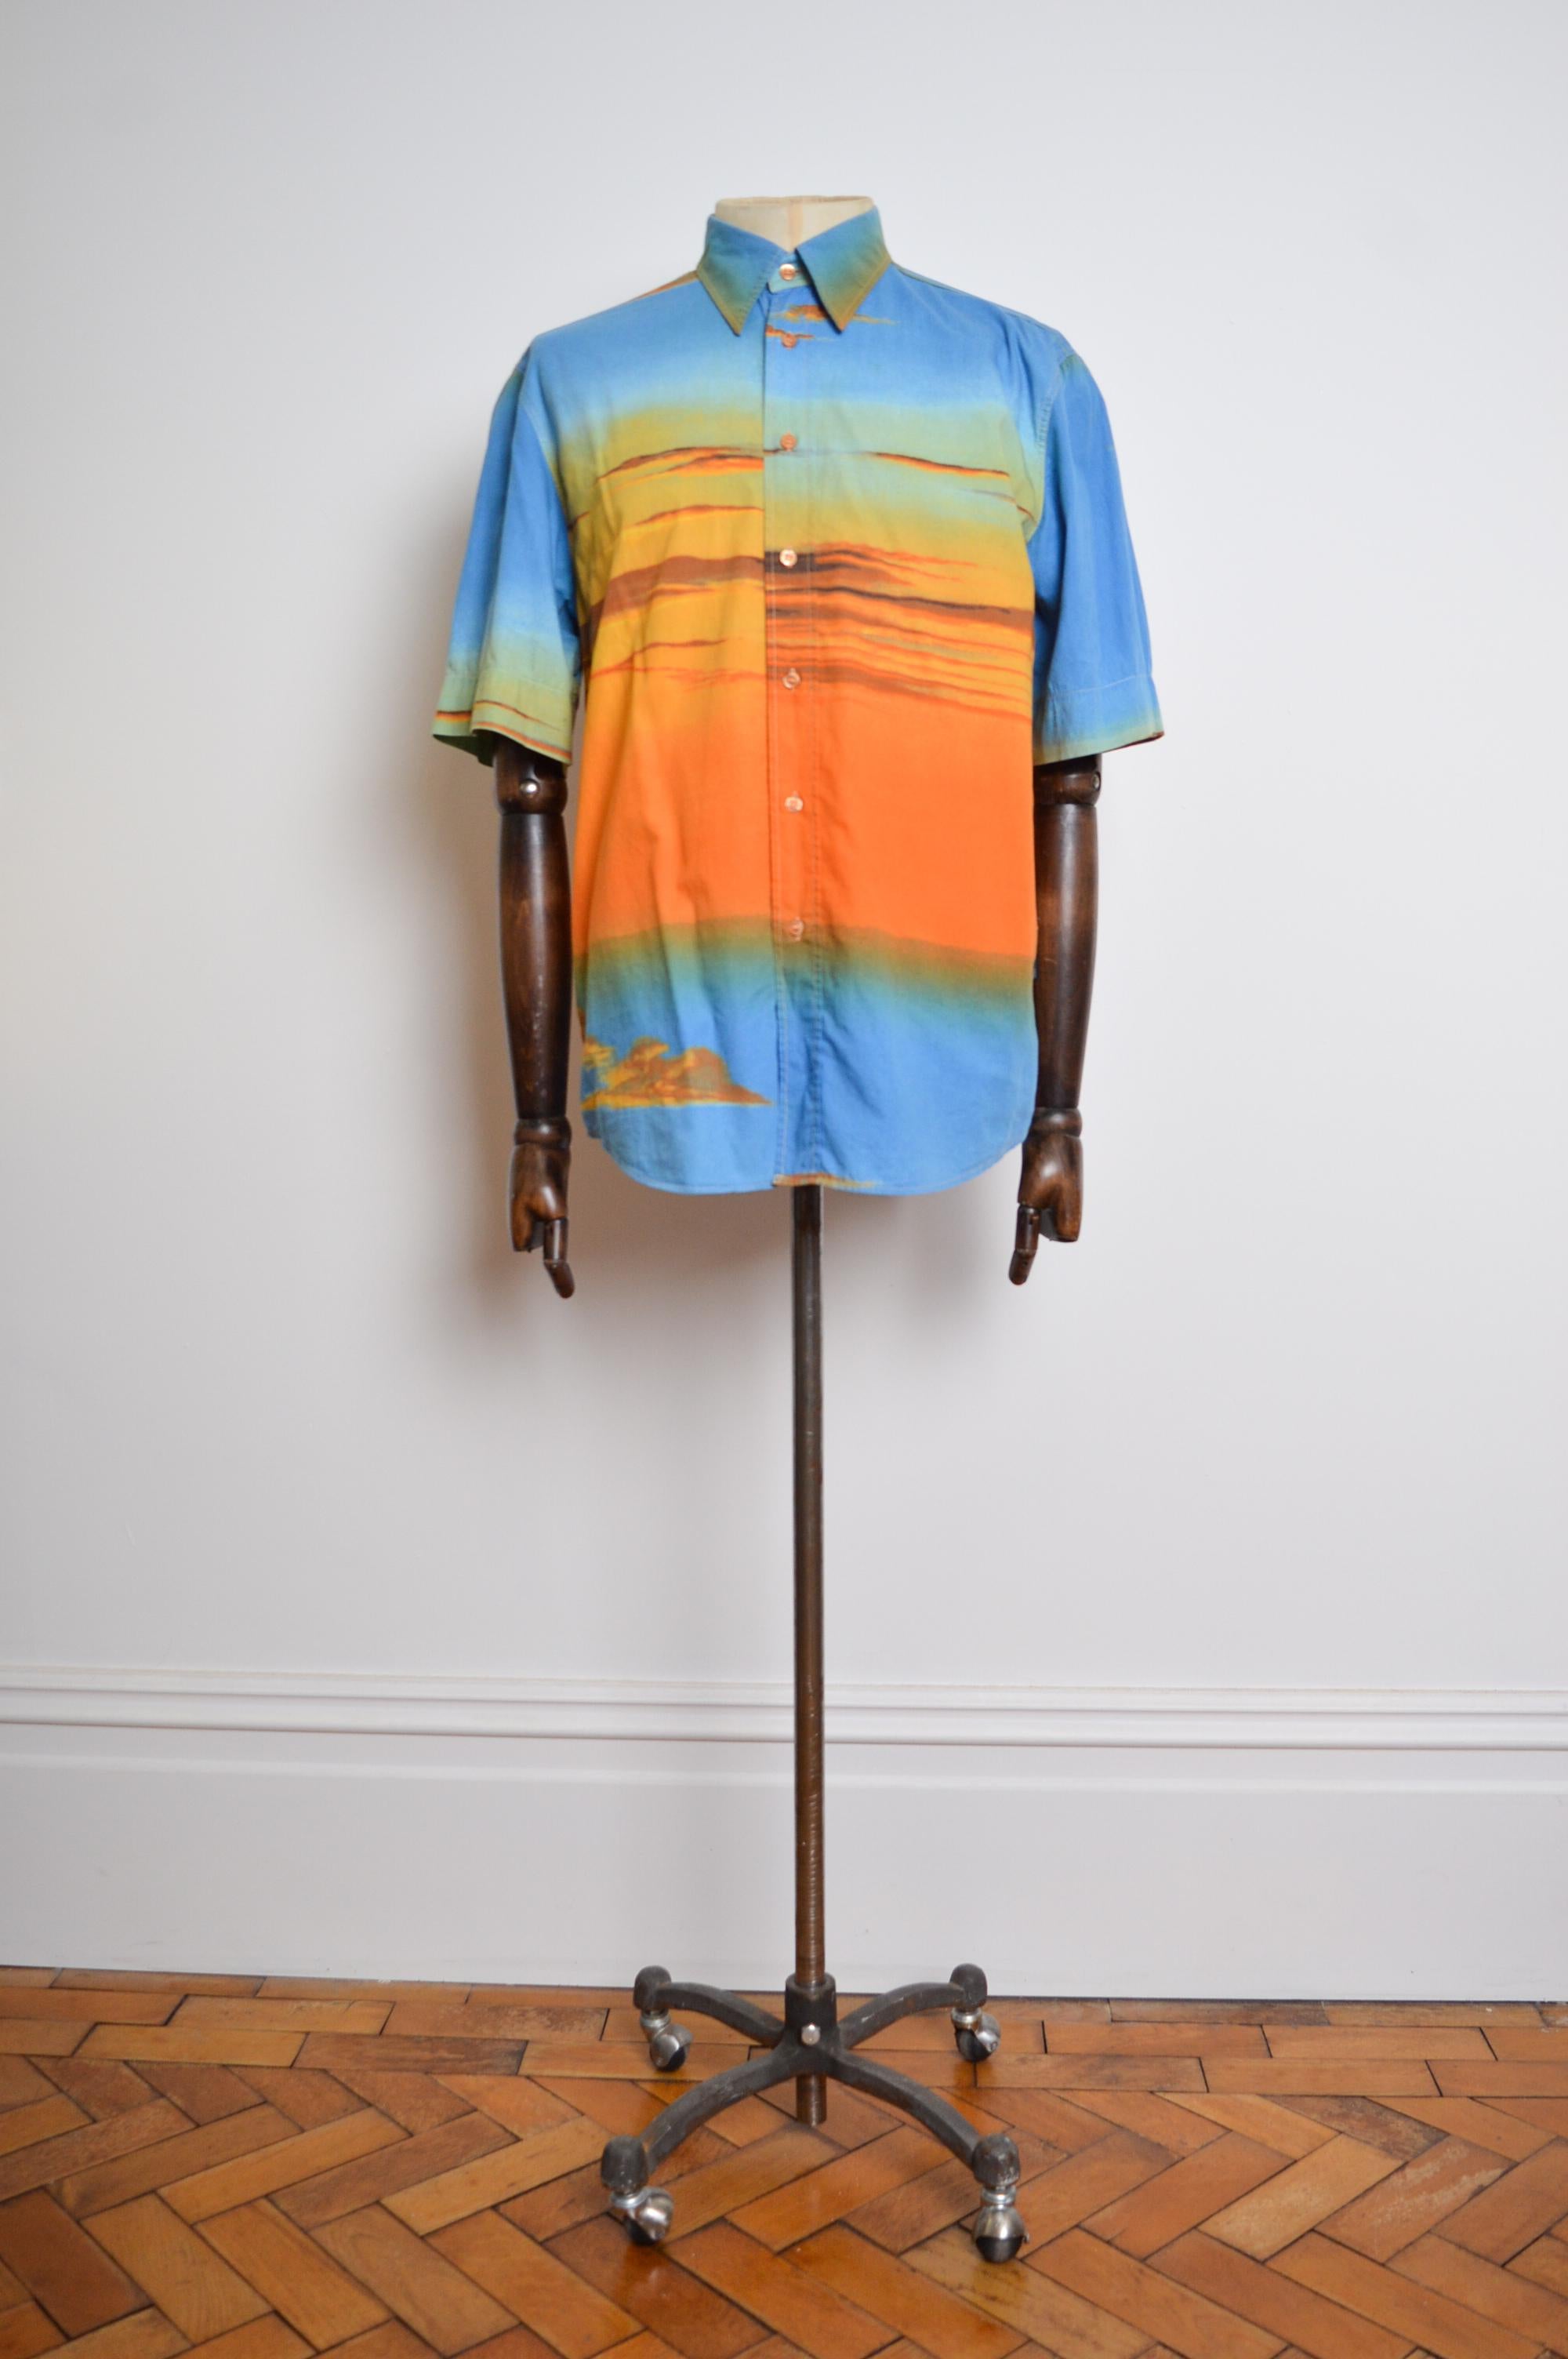 Chemise en coton imprimé coucher de soleil 'MOSCHINO' de l'époque Garage du début des années 2000, fabriquée à partir d'un tissu imprimé dans des tons ombrés bleu et orange. 

Nous avons également la veste et le pantalon assortis disponibles à